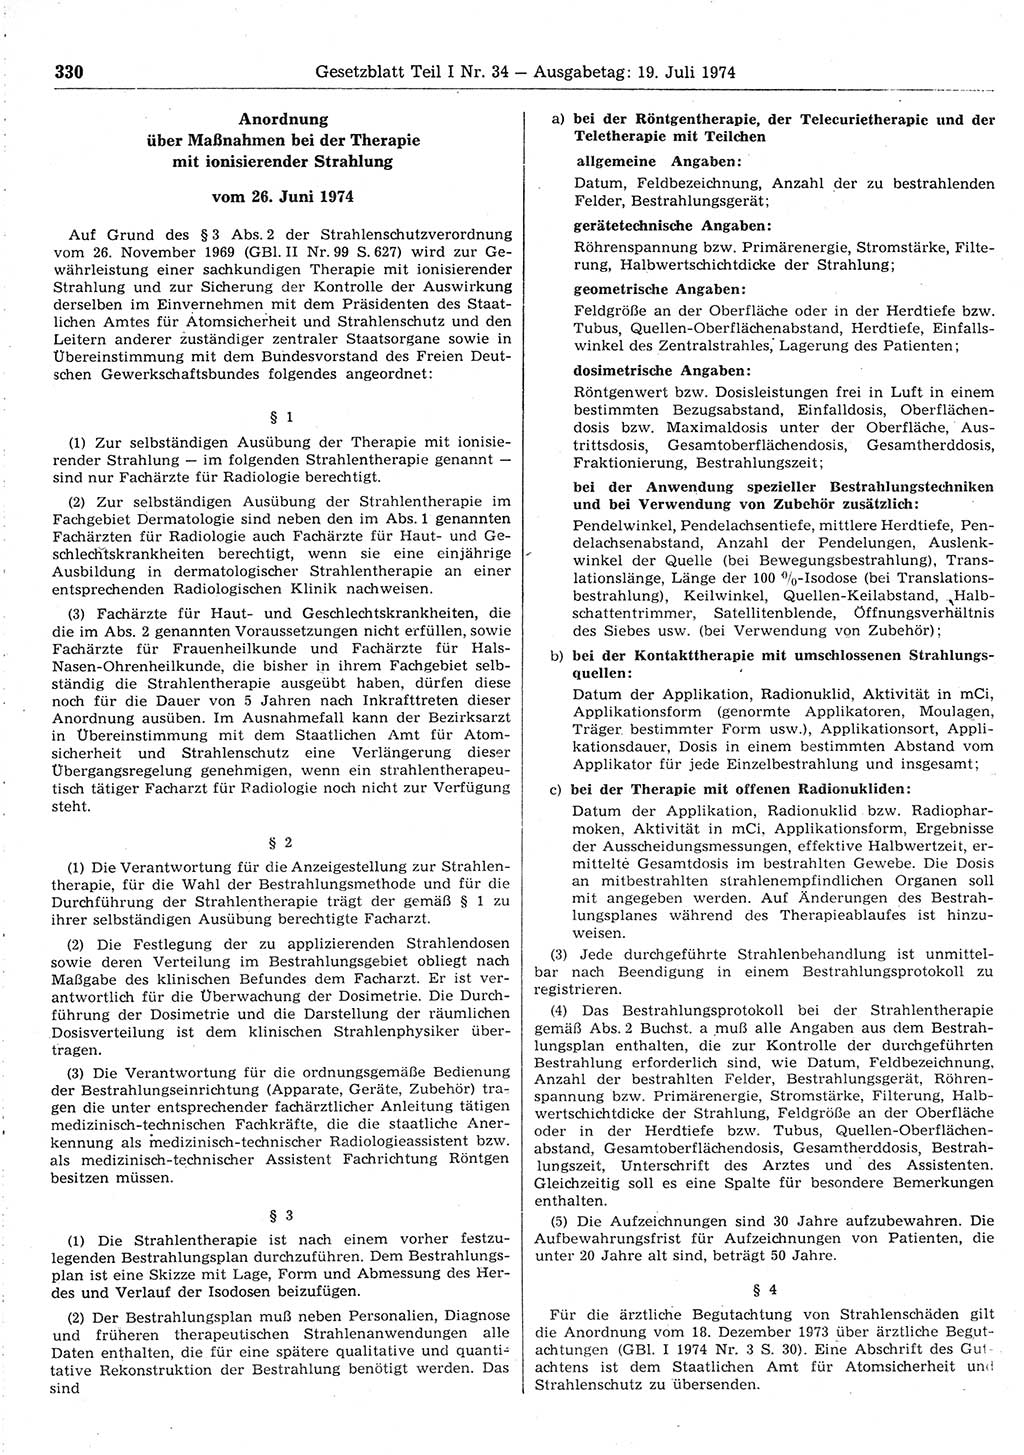 Gesetzblatt (GBl.) der Deutschen Demokratischen Republik (DDR) Teil Ⅰ 1974, Seite 330 (GBl. DDR Ⅰ 1974, S. 330)